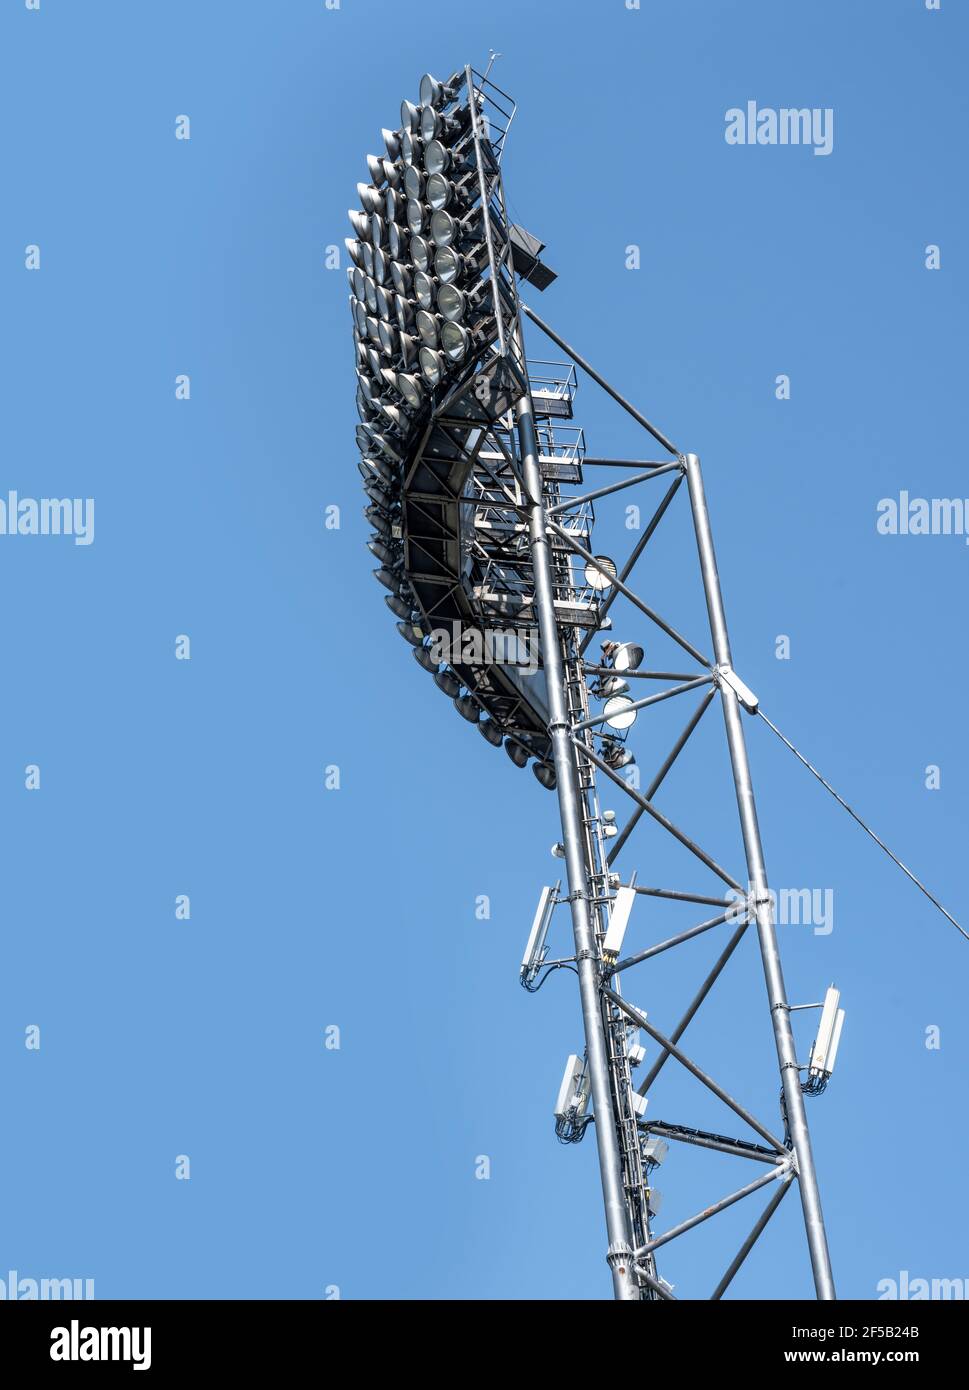 Stadionstrahler vor blauem Himmel Stockfoto